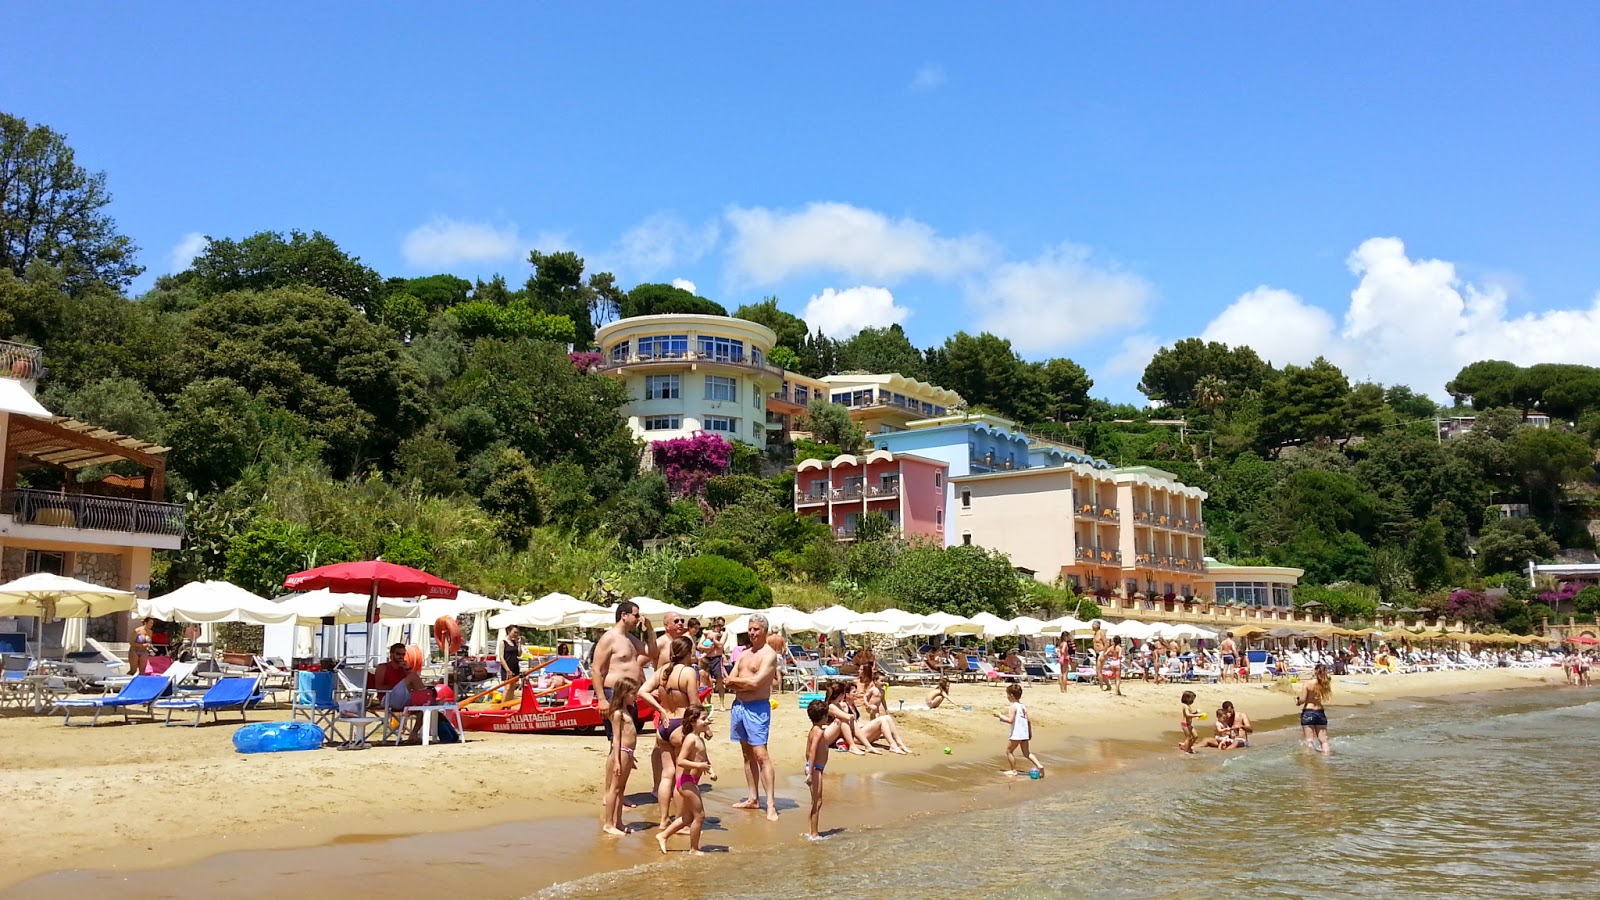 Foto di Summit Hotel beach - luogo popolare tra gli intenditori del relax